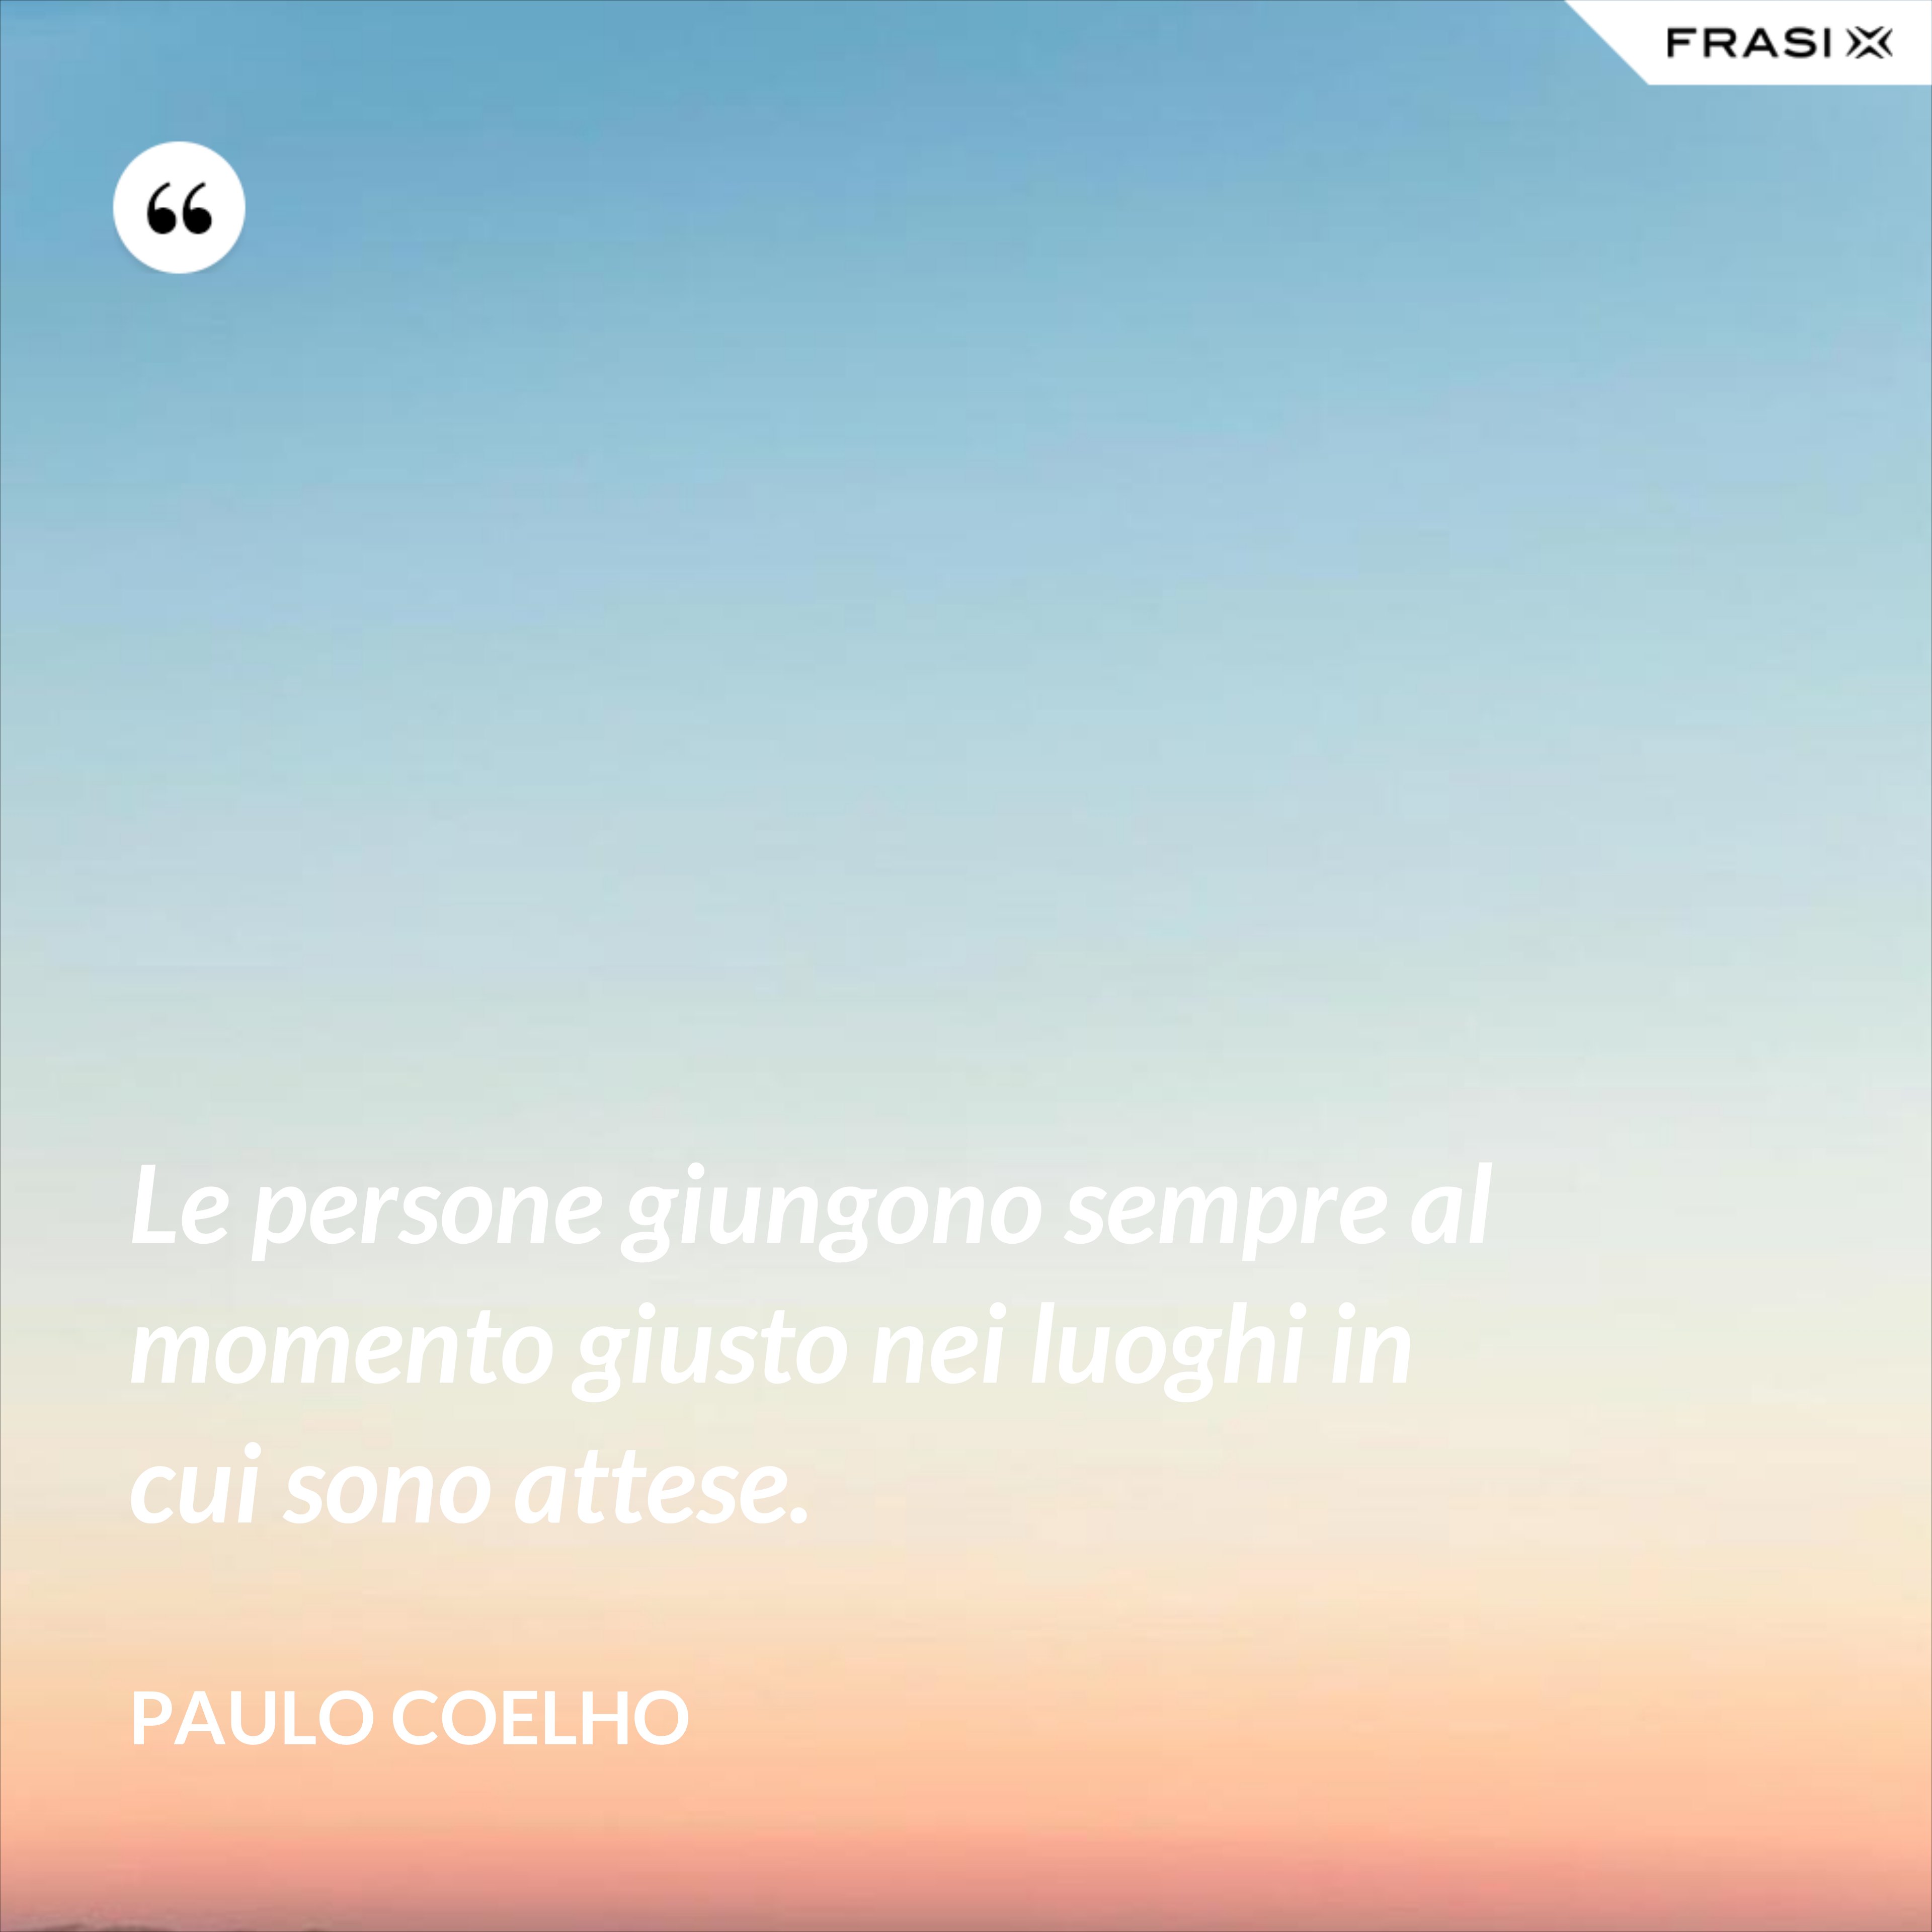 Le persone giungono sempre al momento giusto nei luoghi in cui sono attese. - Paulo Coelho